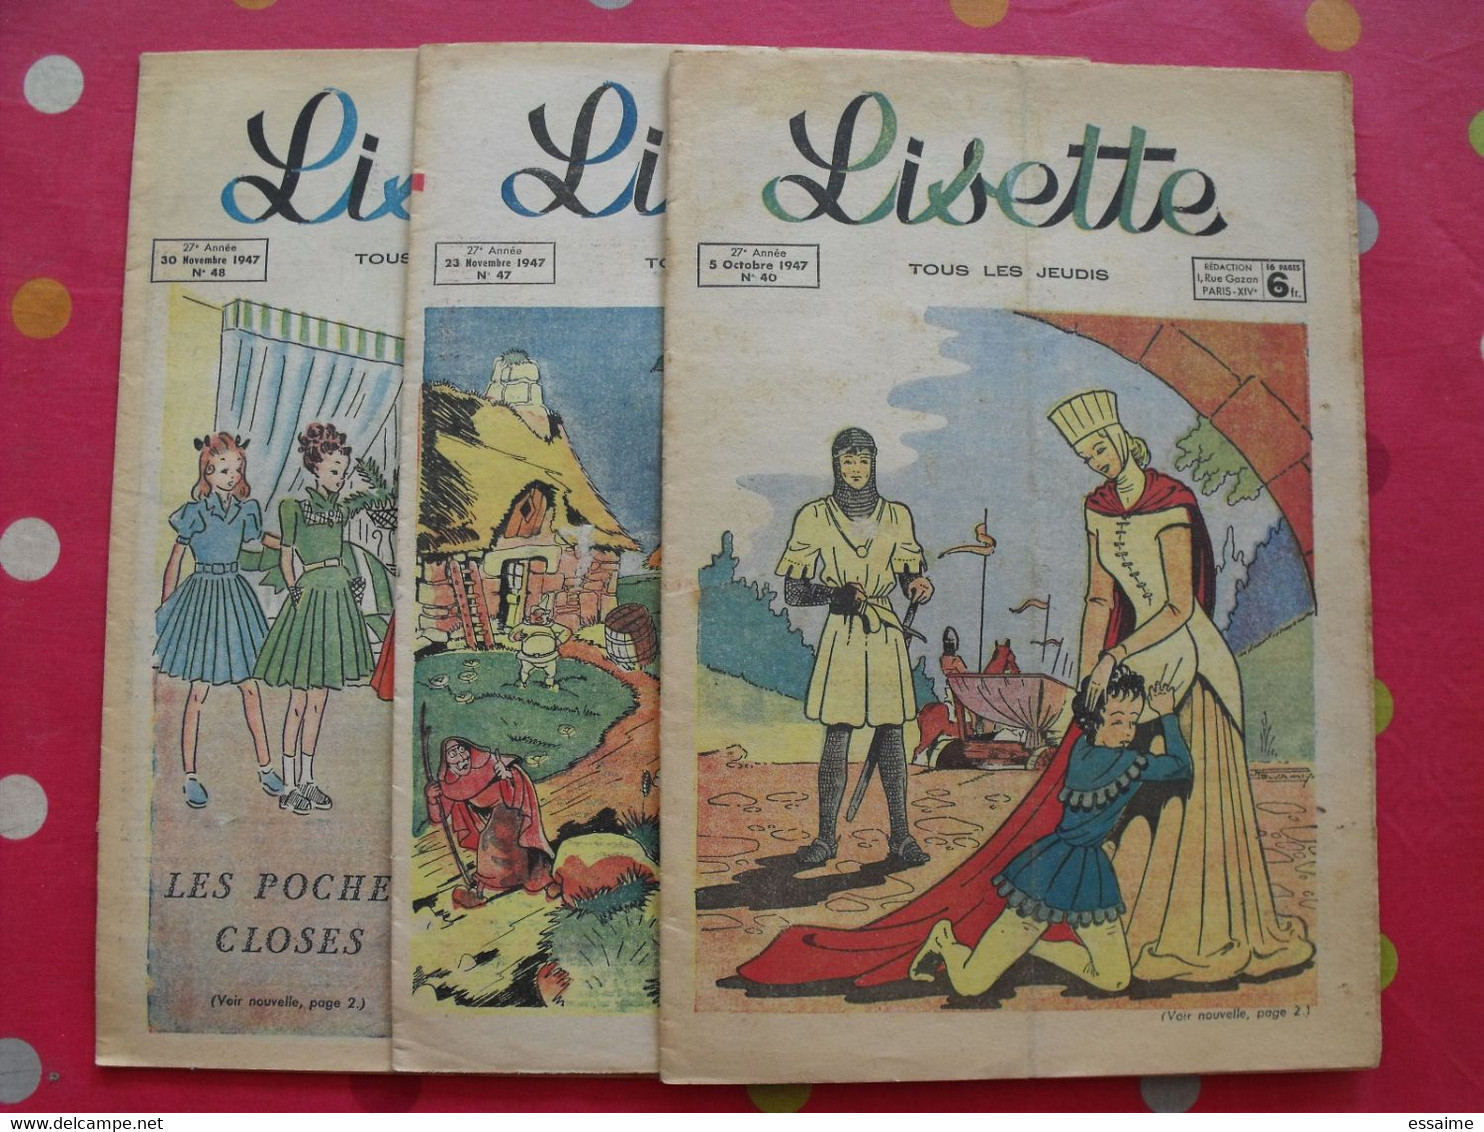 3 revues BD Lisette de 1947. souriau monique levrier maitrejean savine bussemey mixi berel le monnier. à redécouvrir